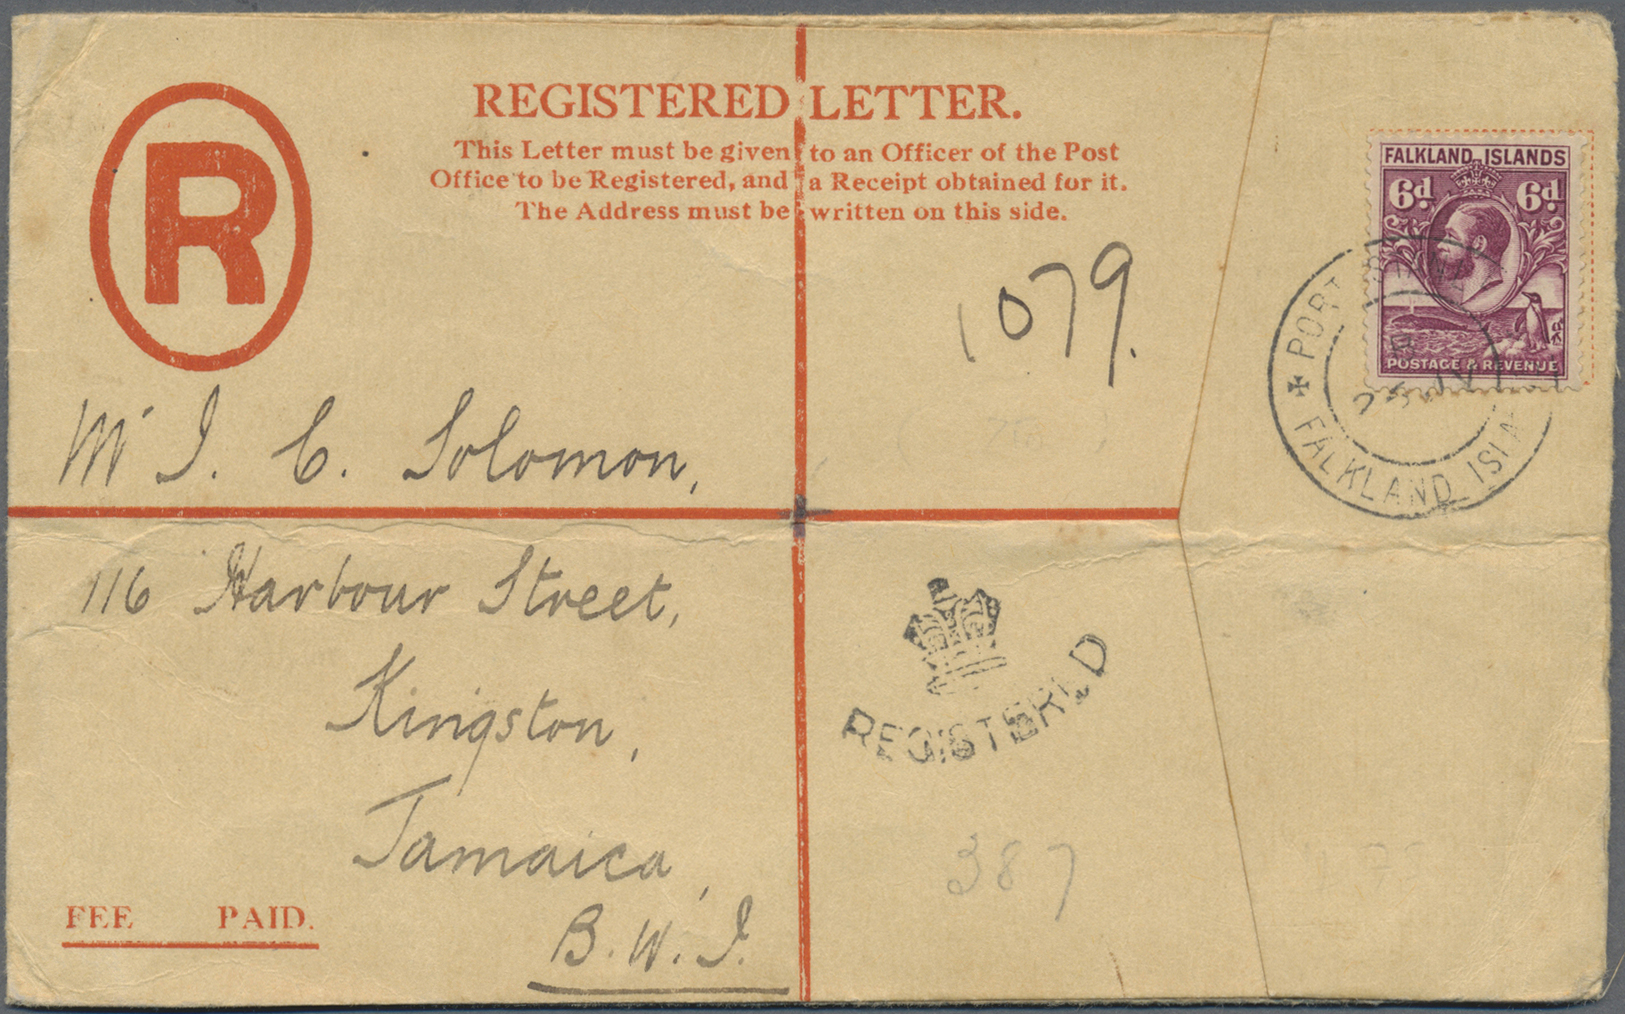 Br Falklandinseln: 1937. Registered Letter Envelope Bearing SG 121, 6d Purple Tied By Port Stanley/Falkland Lslands Doub - Falkland Islands